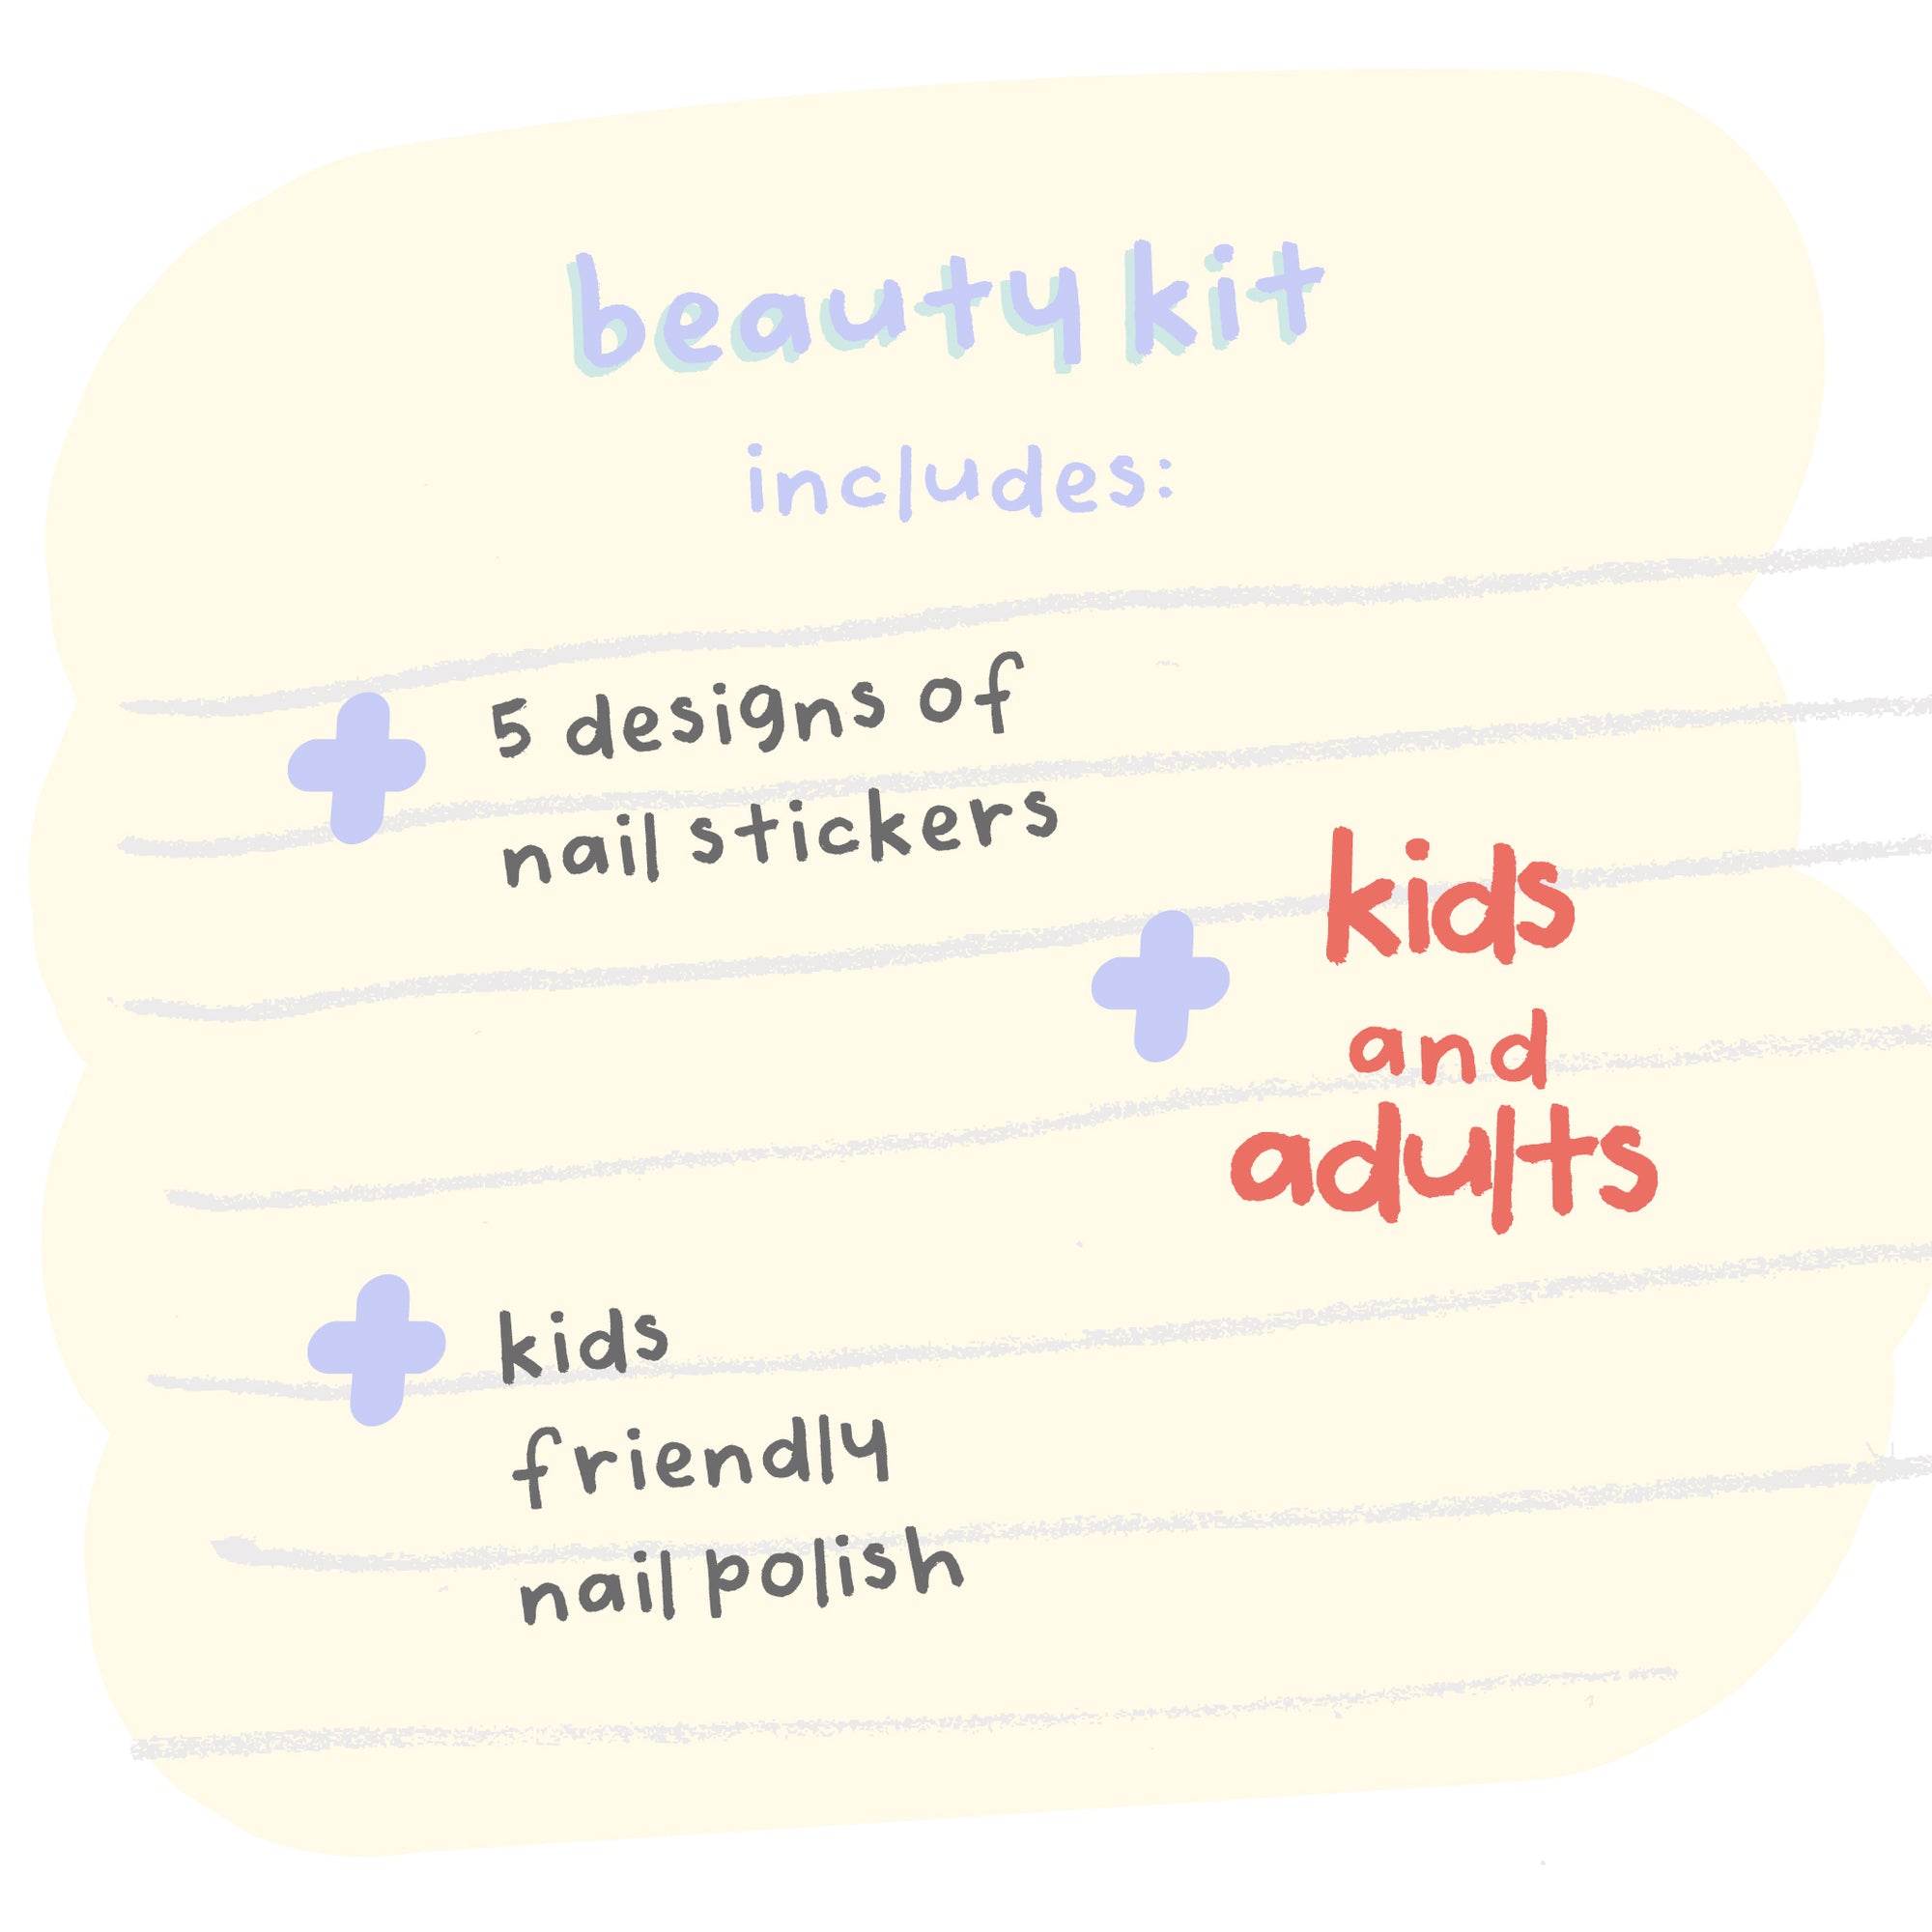 beauty kit - fruits nail sticker with powder pink and sage green nail polish